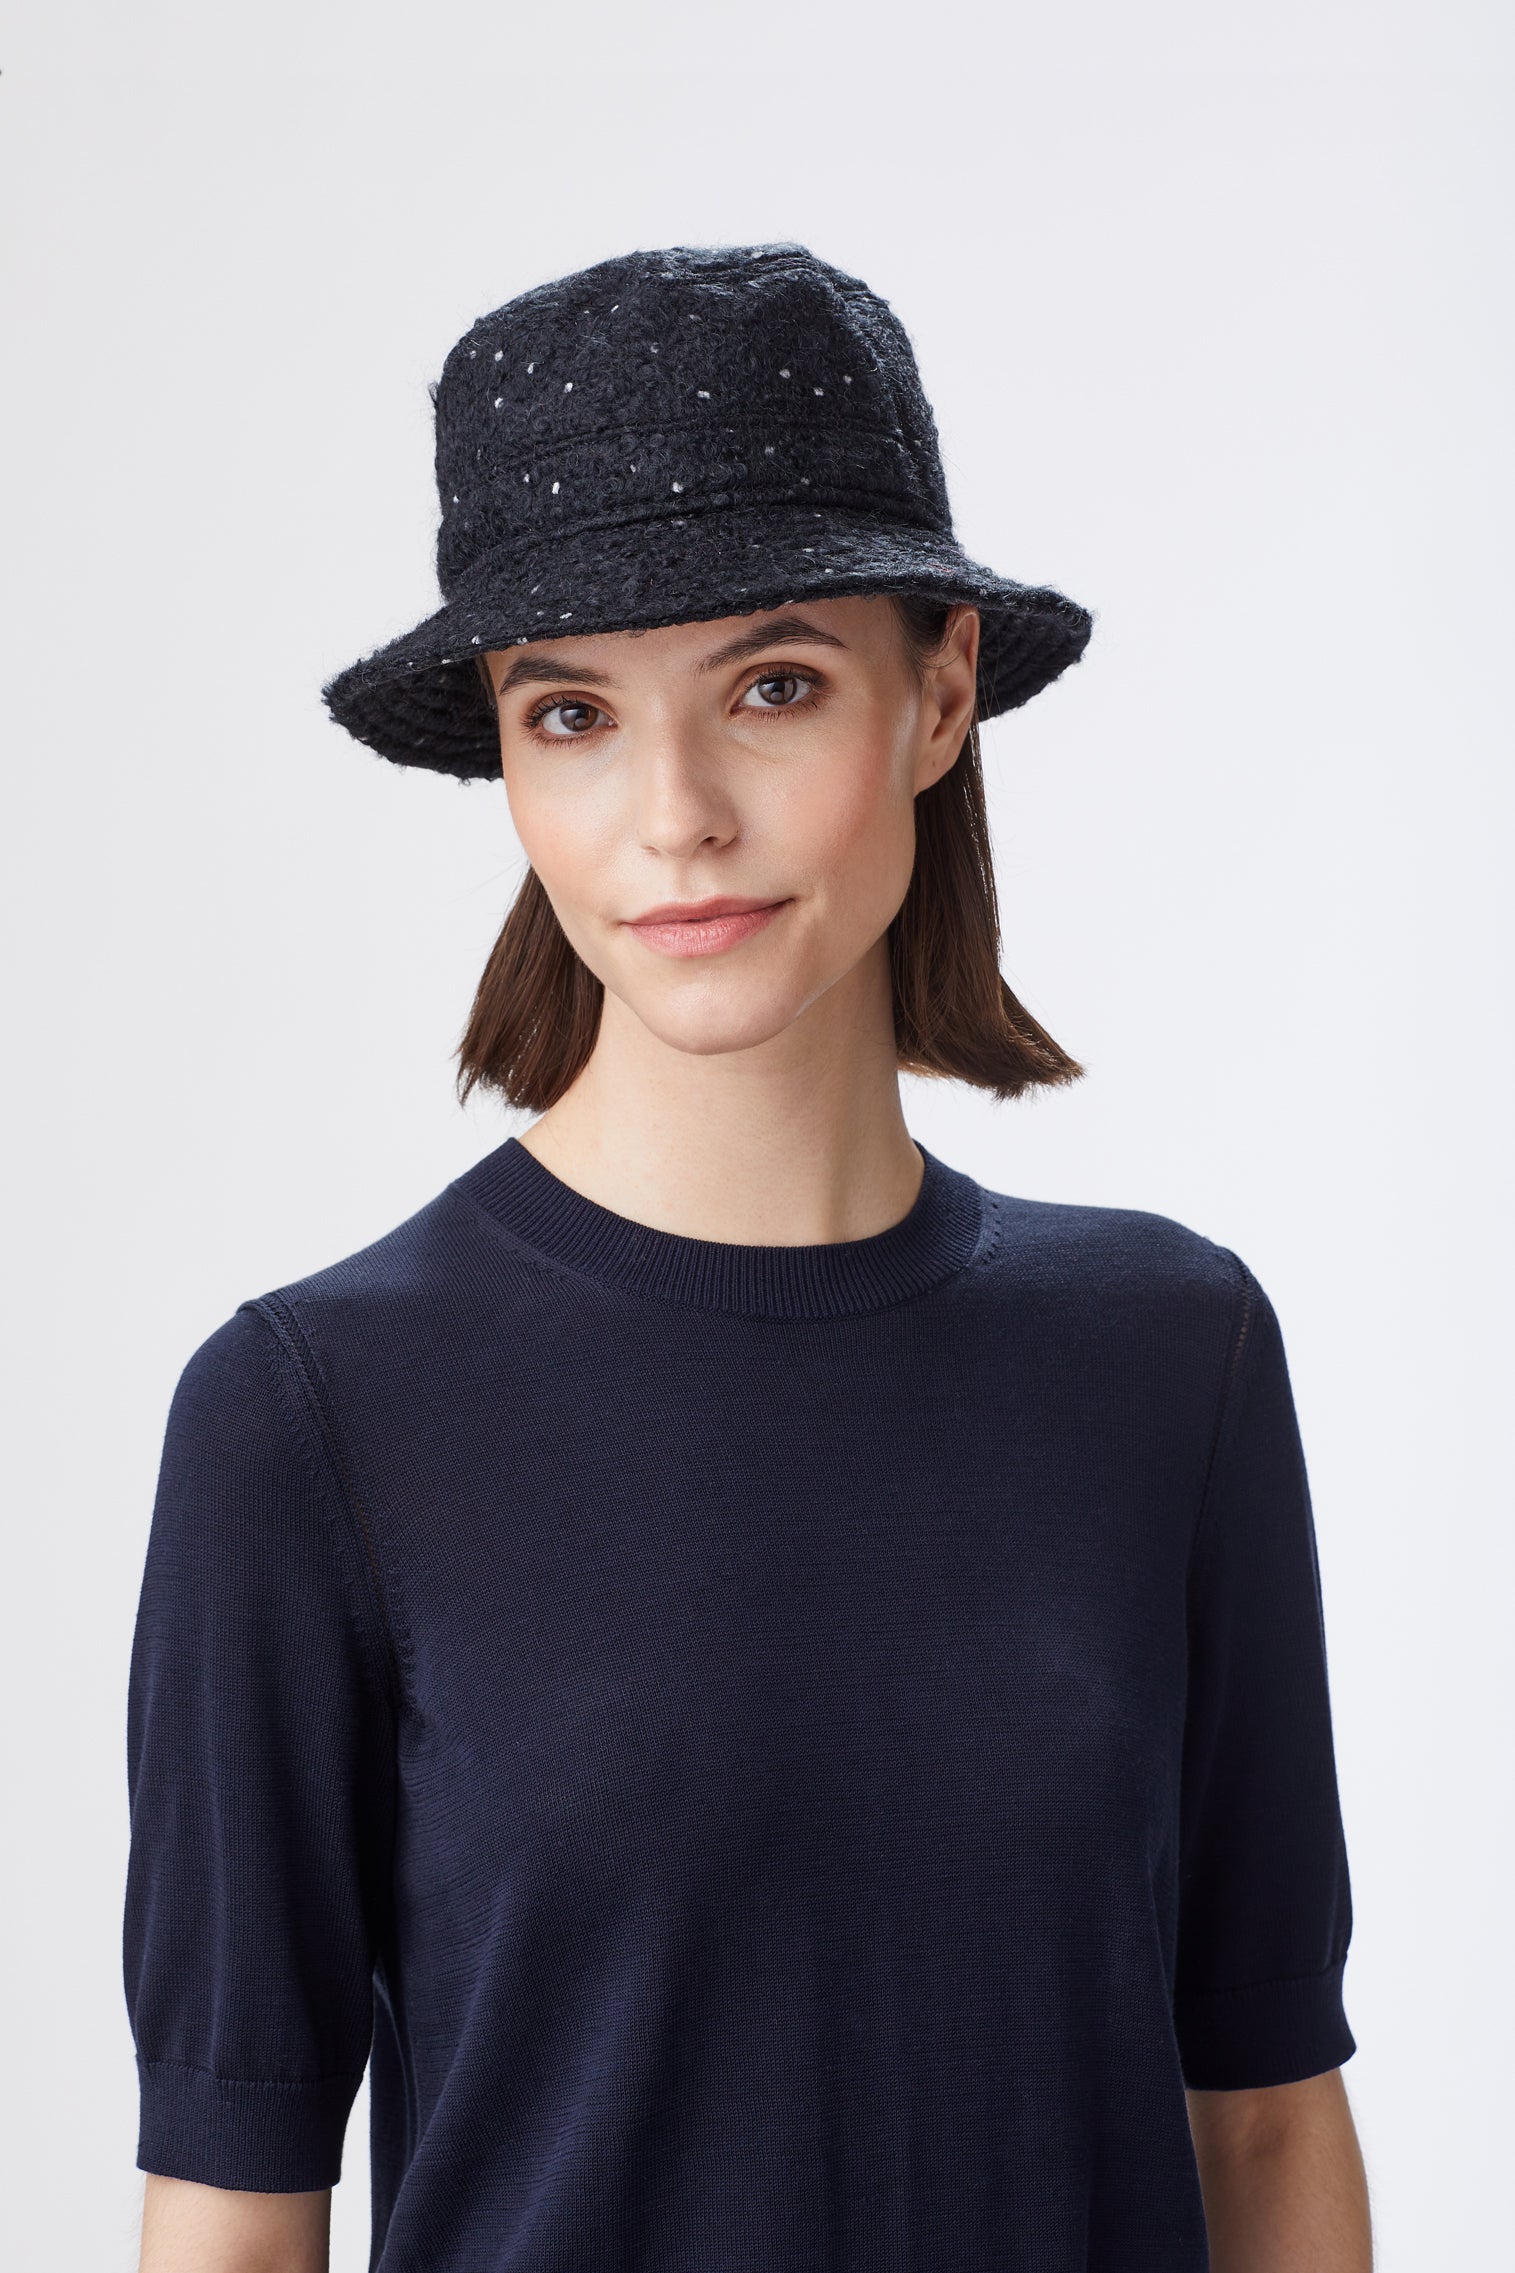 Malton Bucket Hat - Women’s Hats - Lock & Co. Hatters London UK